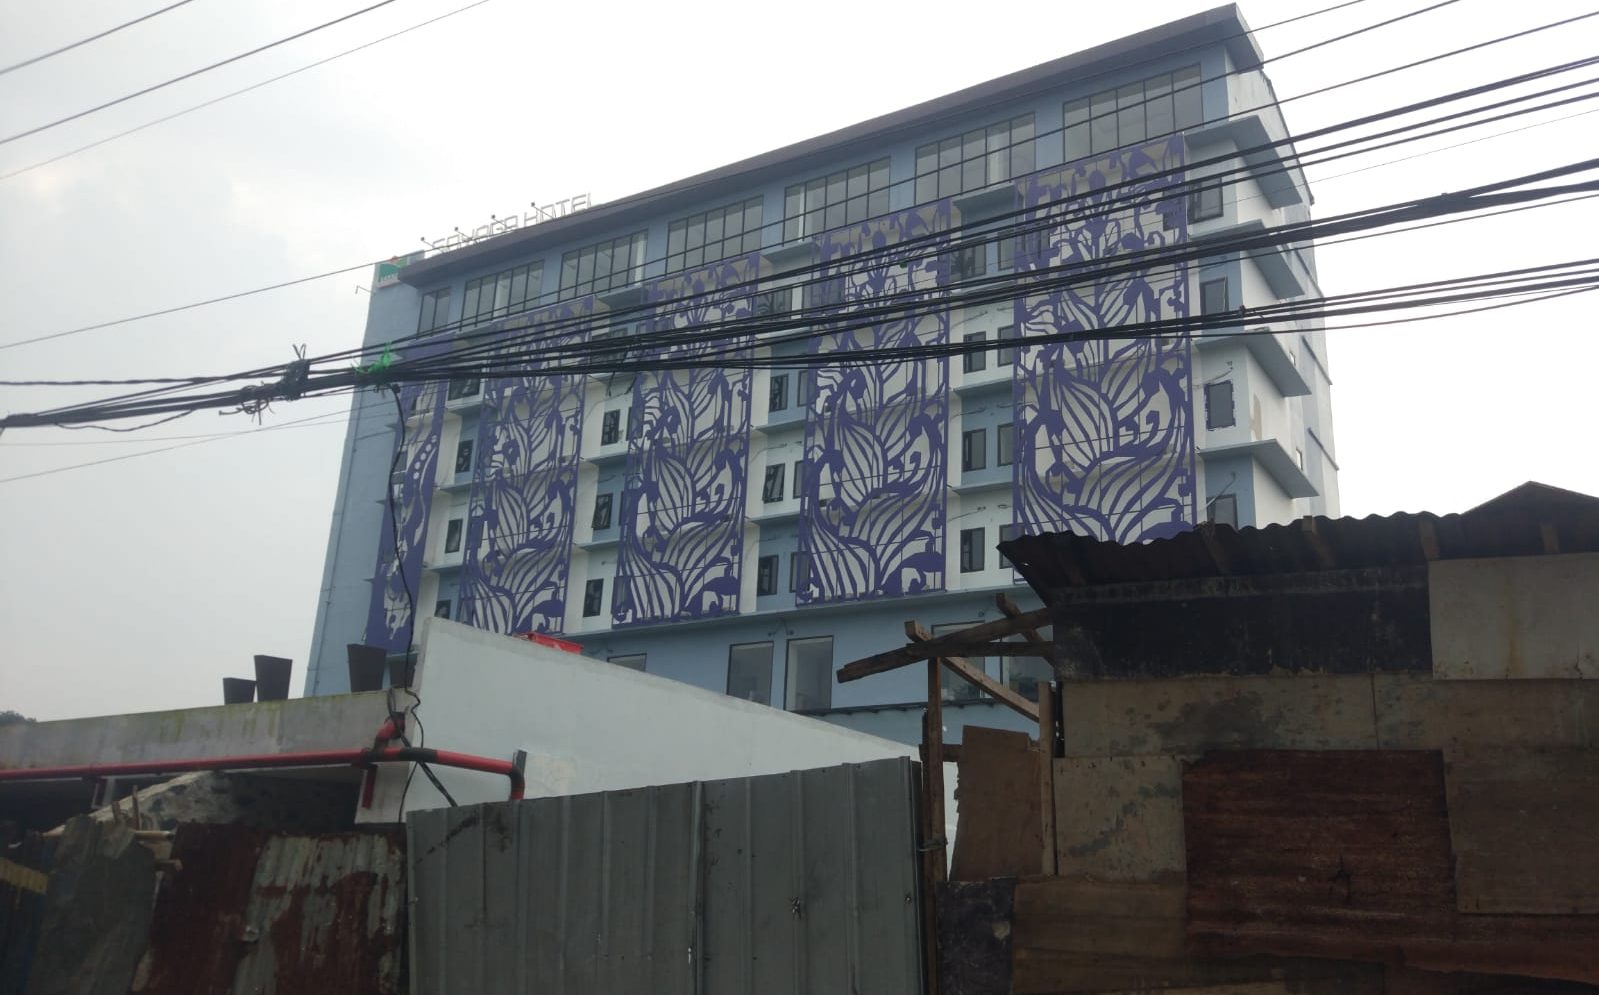 Proyek pembangunan Hotel milik BUMD Kabupaten Bogor PT Sayaga Wisata terlihat mangkrak dan tidak terselesaikan.